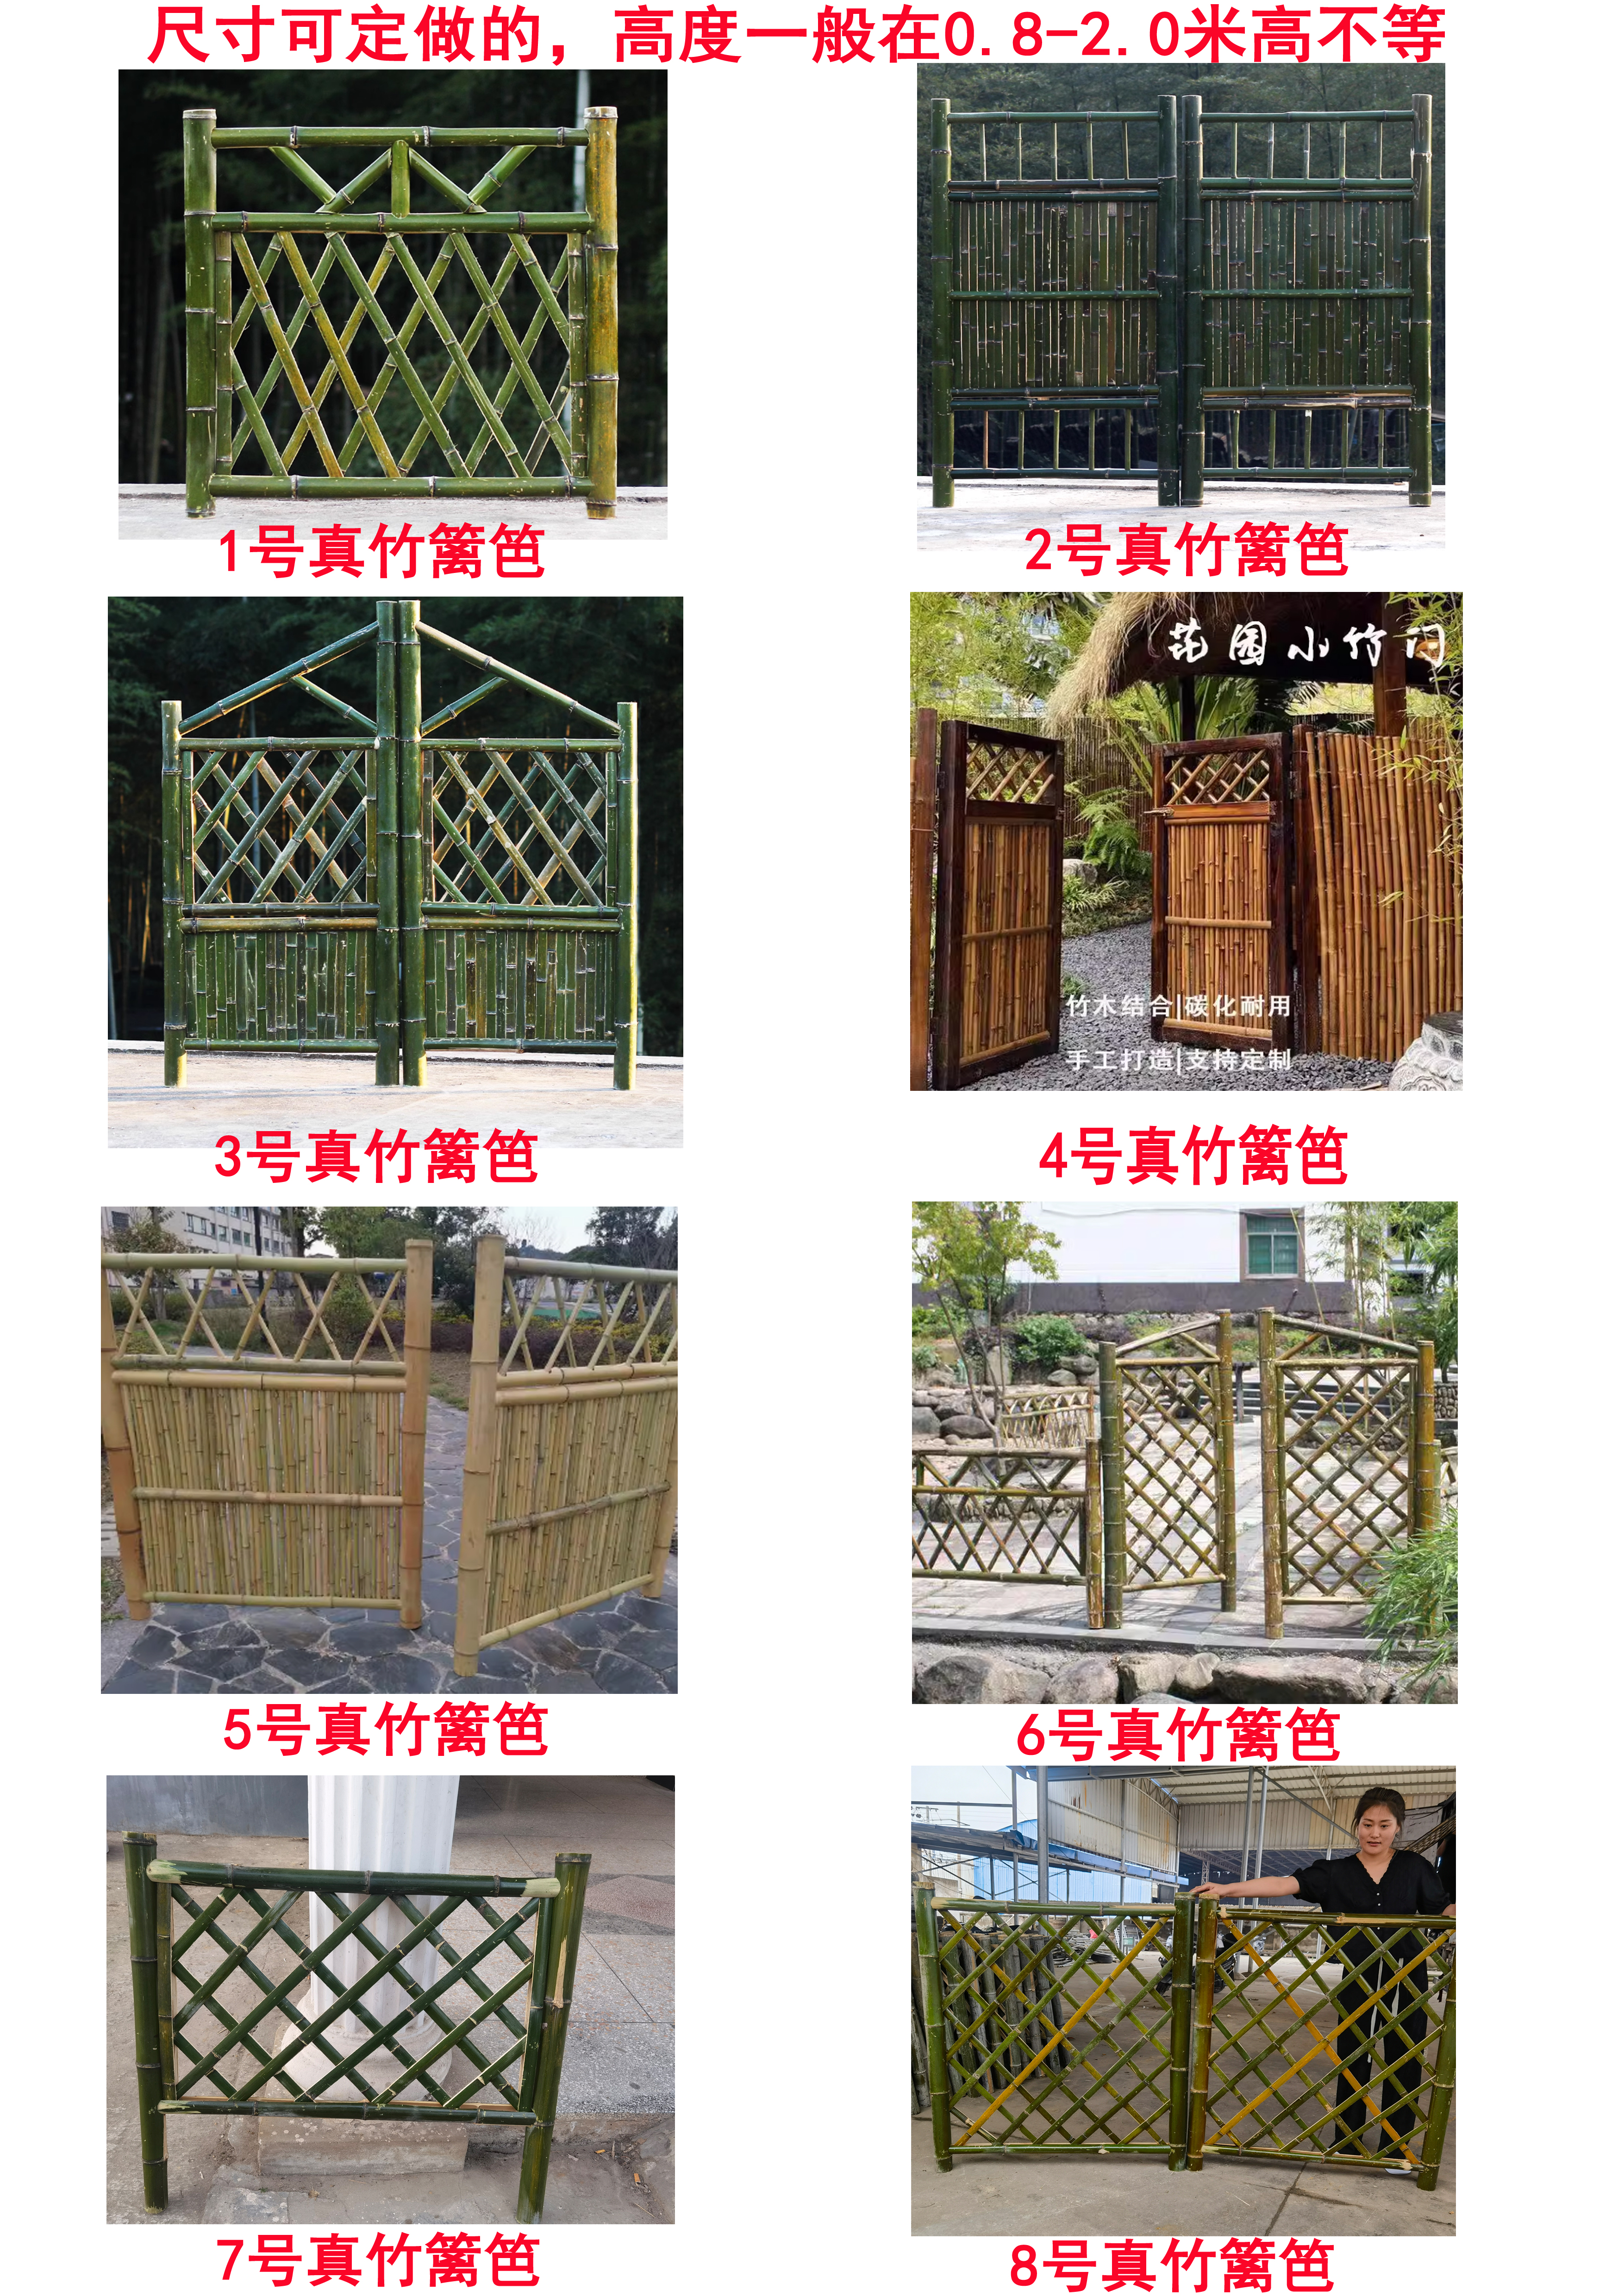 邵阳 竹篱笆 菜园围栏保定顺平竹节围栏仿竹护栏